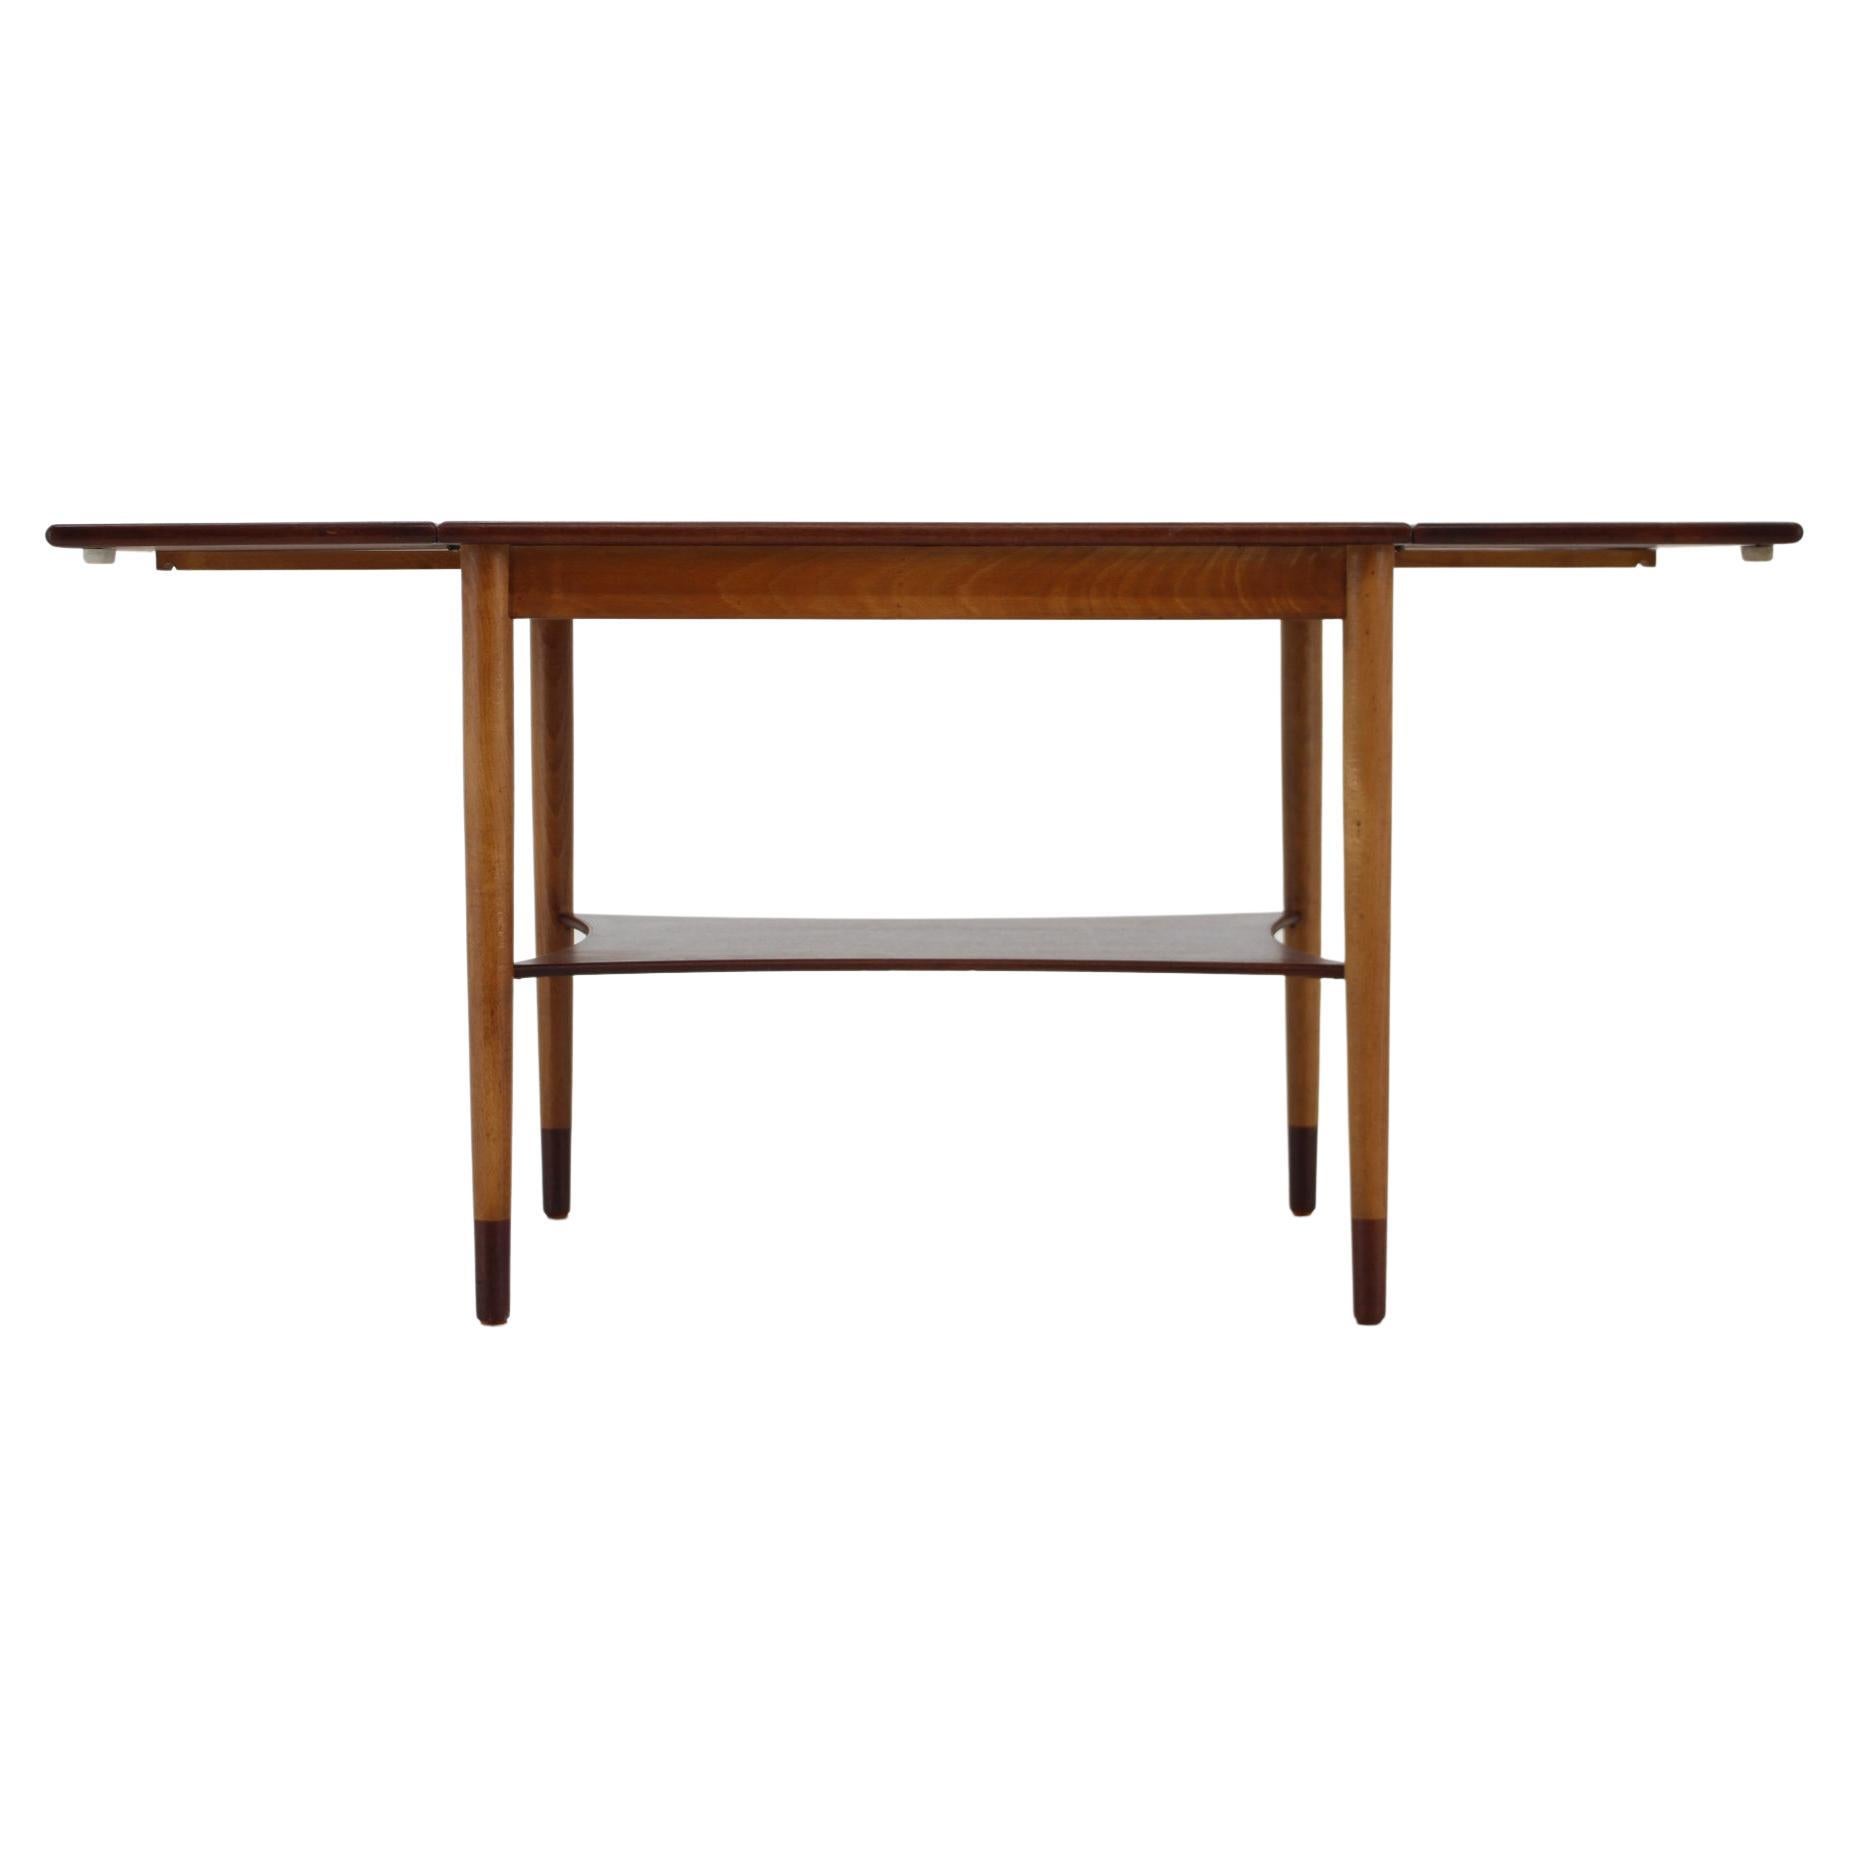 1960s Borge Mogensen Teak and Oak Coffee Table for Soborg Mobelfabric, Denmark For Sale